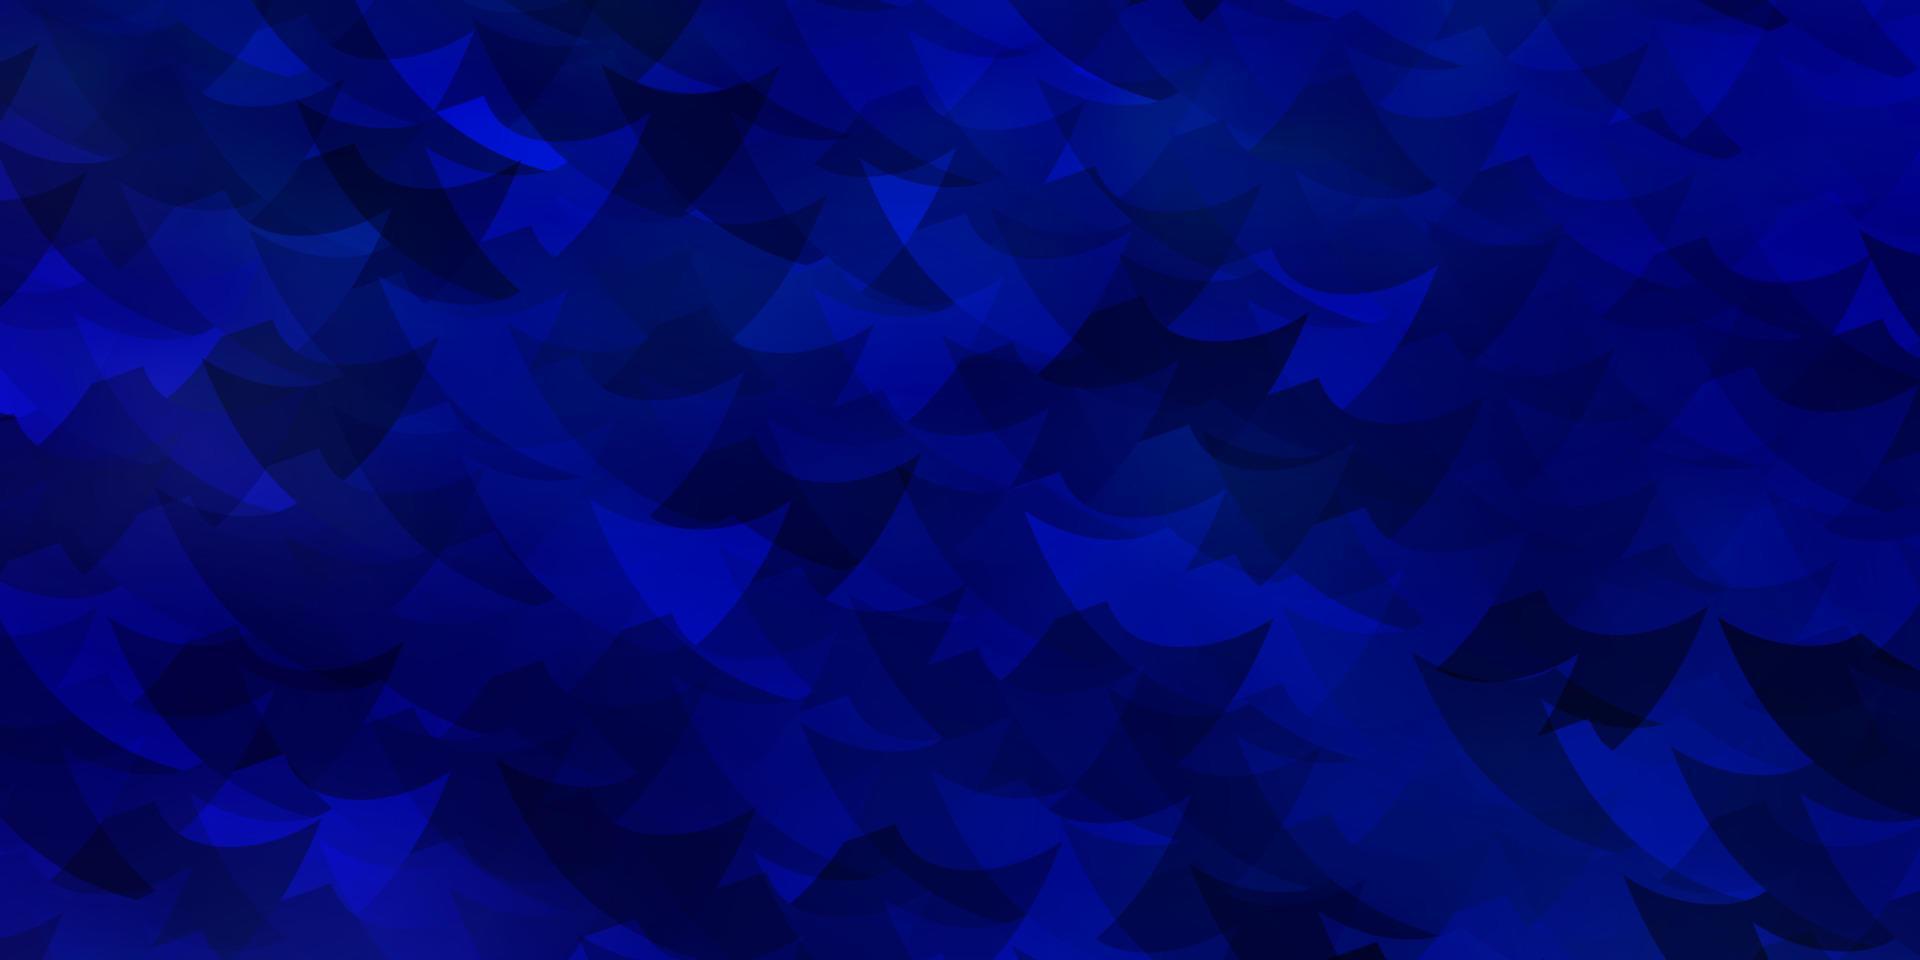 diseño de vector azul claro con rectángulos, triángulos.